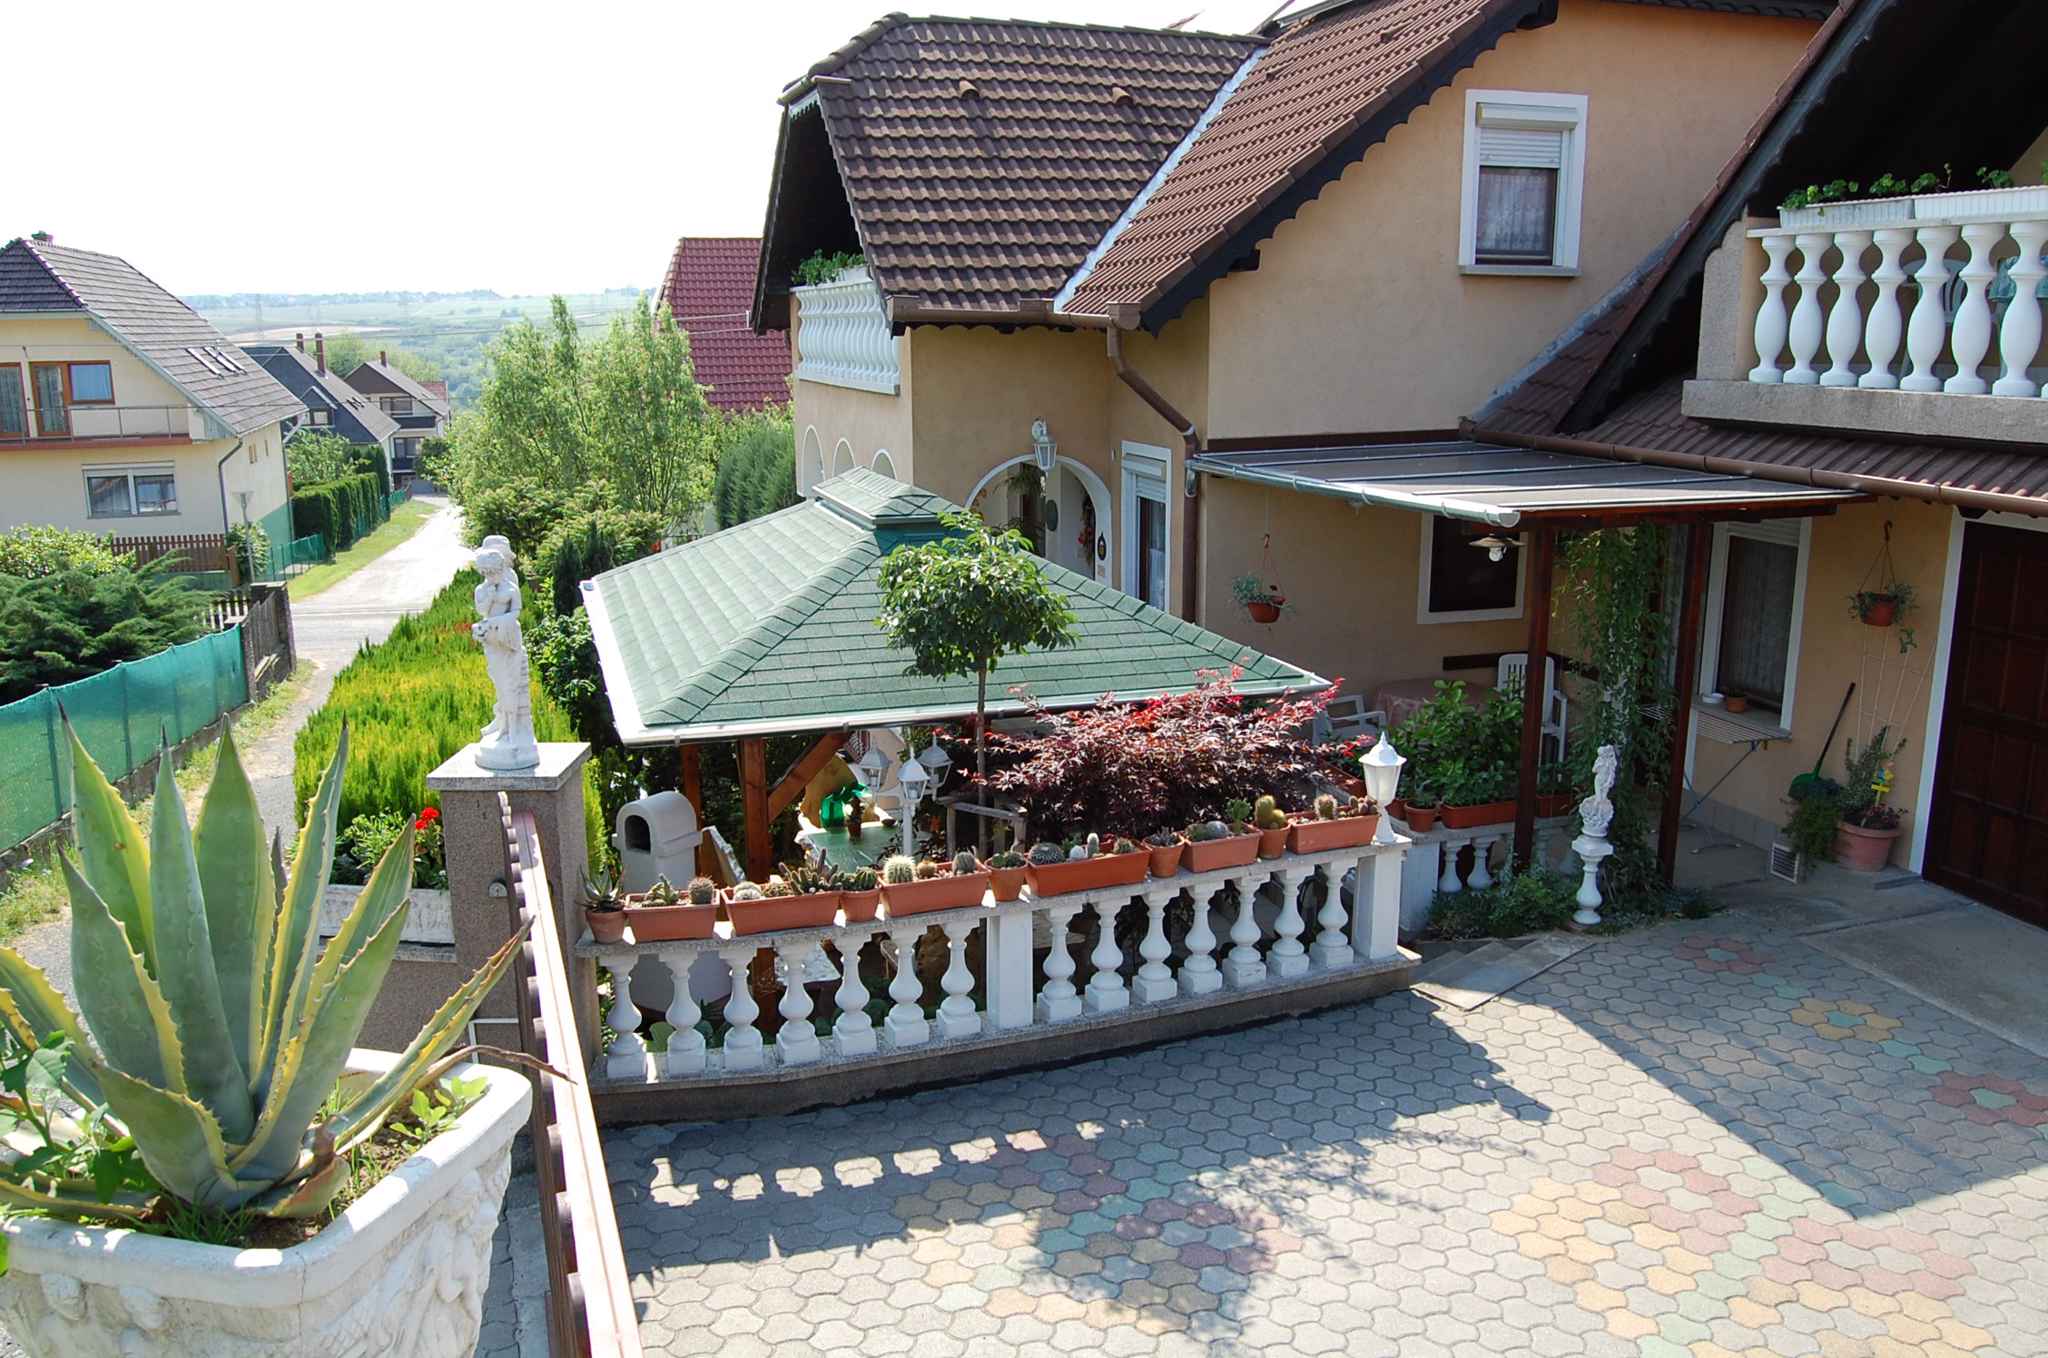 Ferienwohnung mit Terrasse und WLAN  in Ungarn